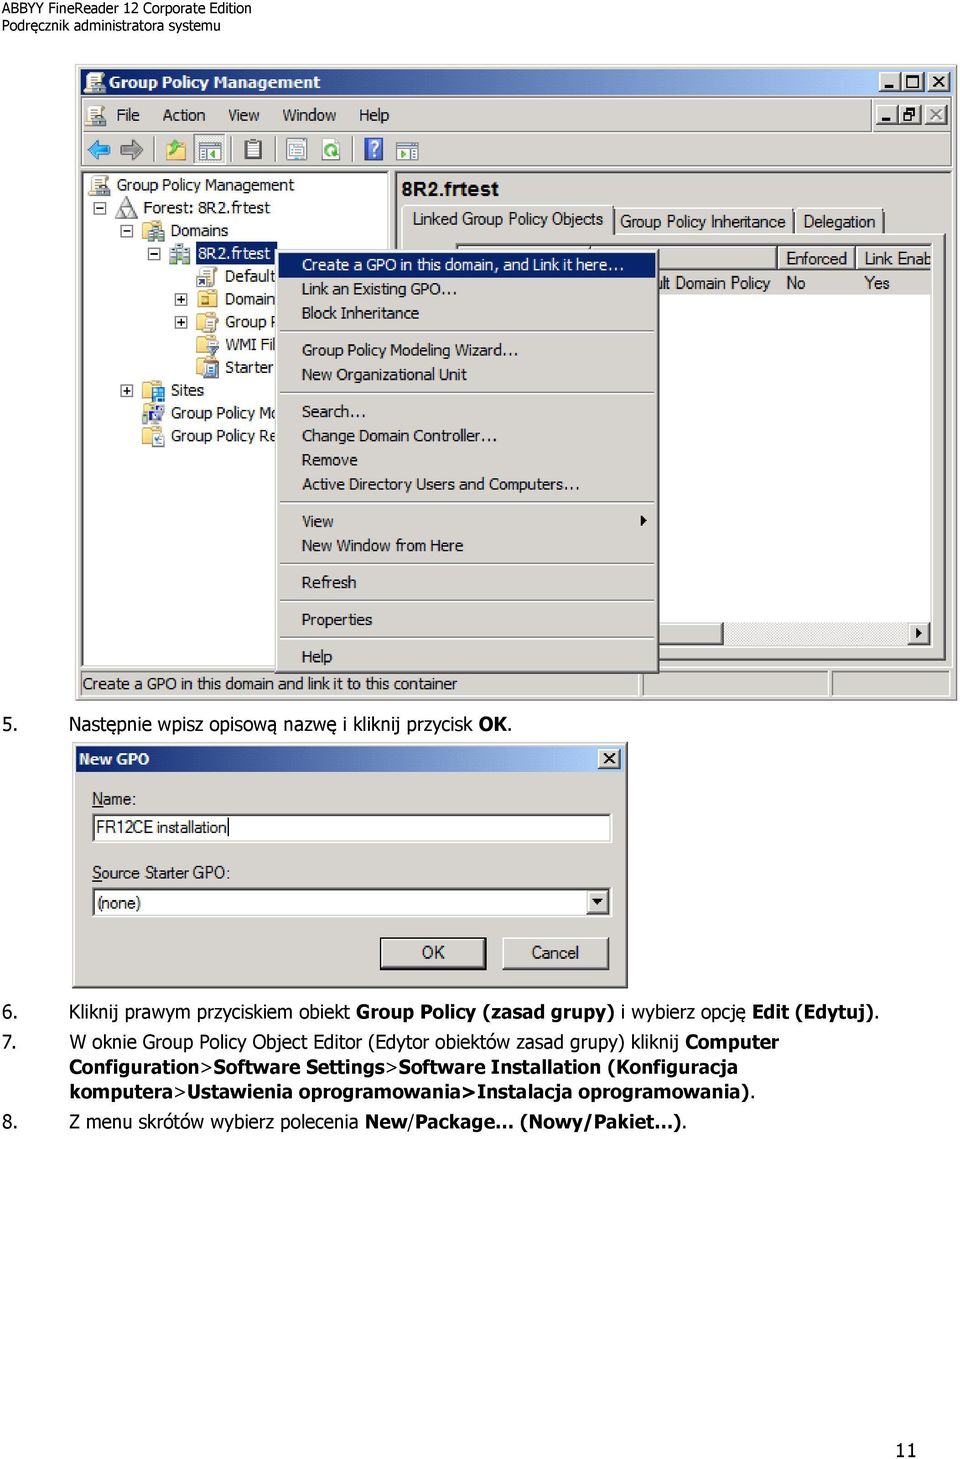 W oknie Group Policy Object Editor (Edytor obiektów zasad grupy) kliknij Computer Configuration>Software